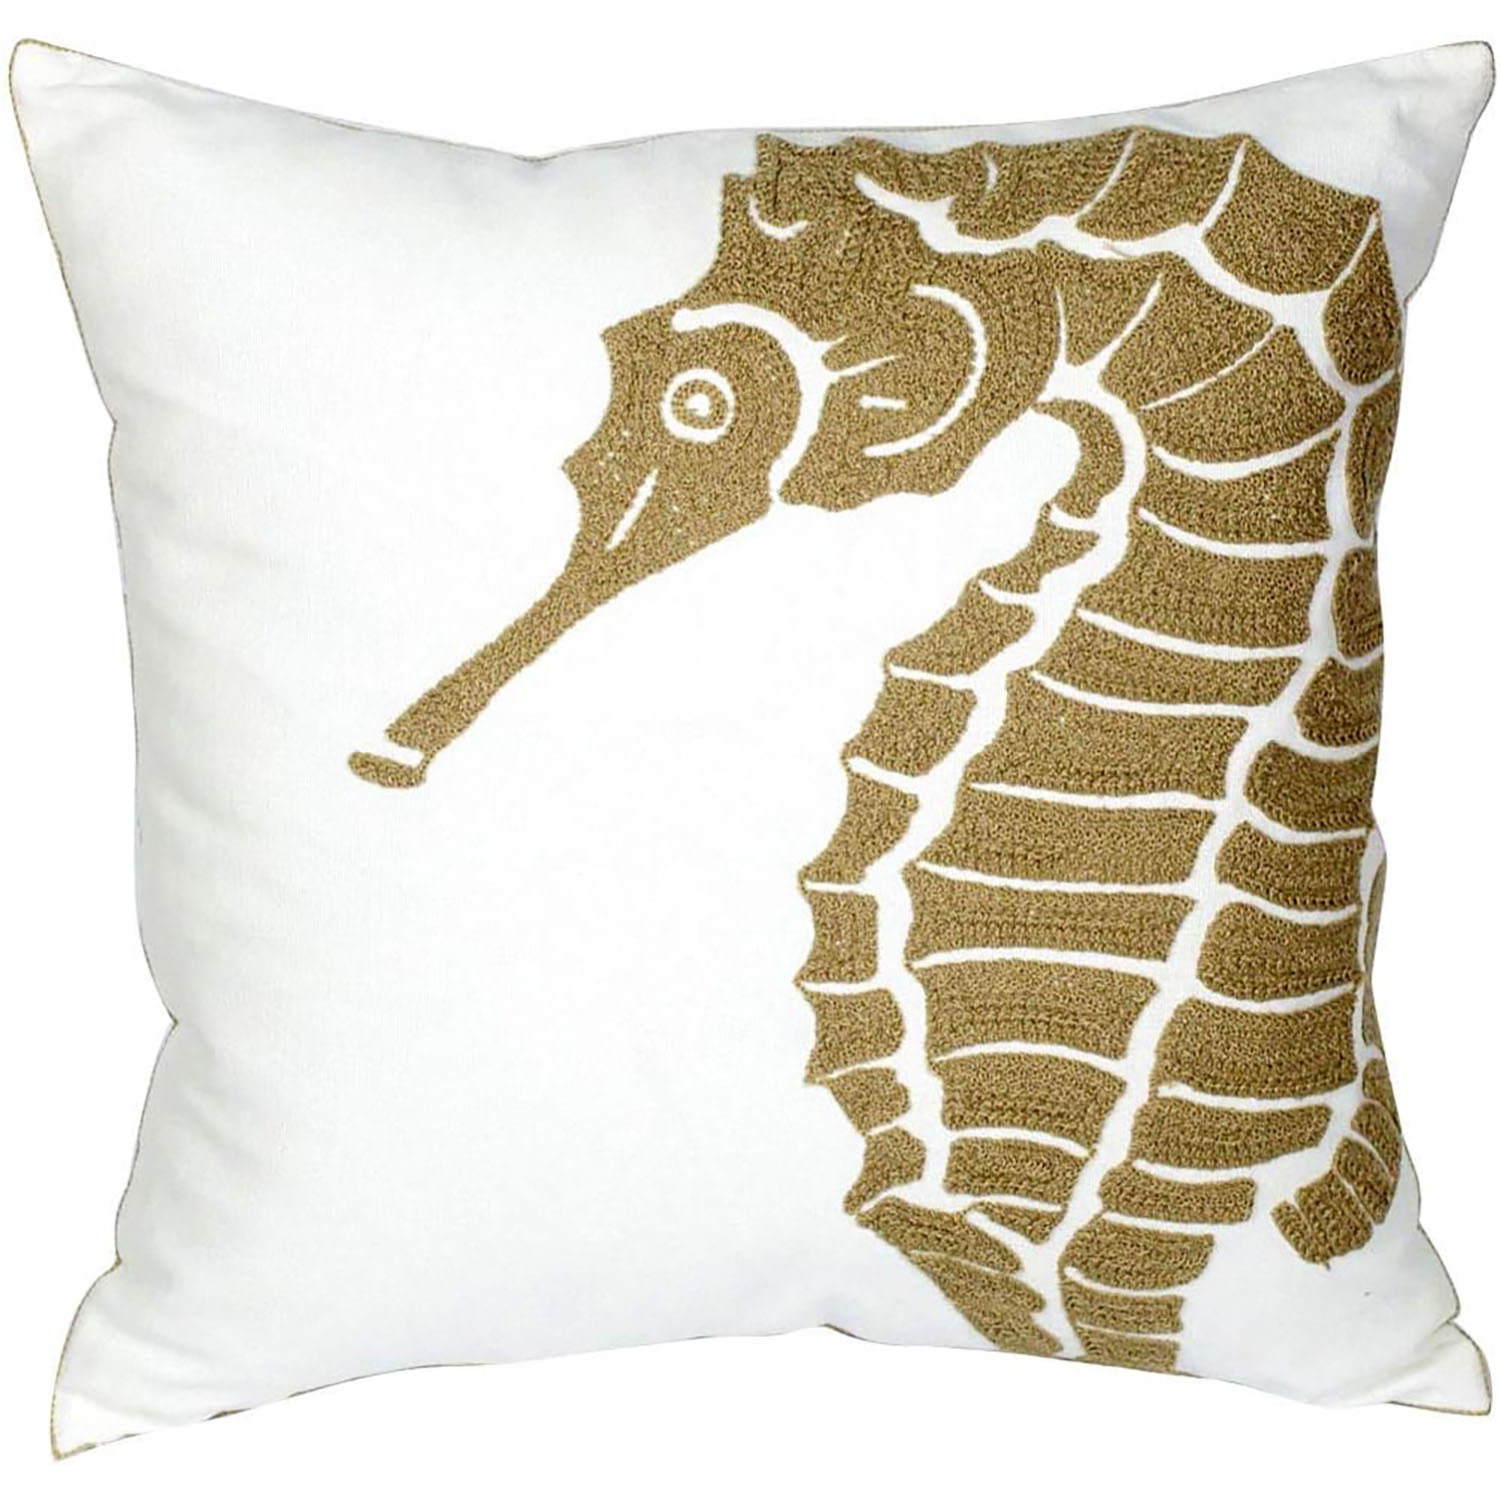 Nautical Decor Pillow Cover - Seahorse